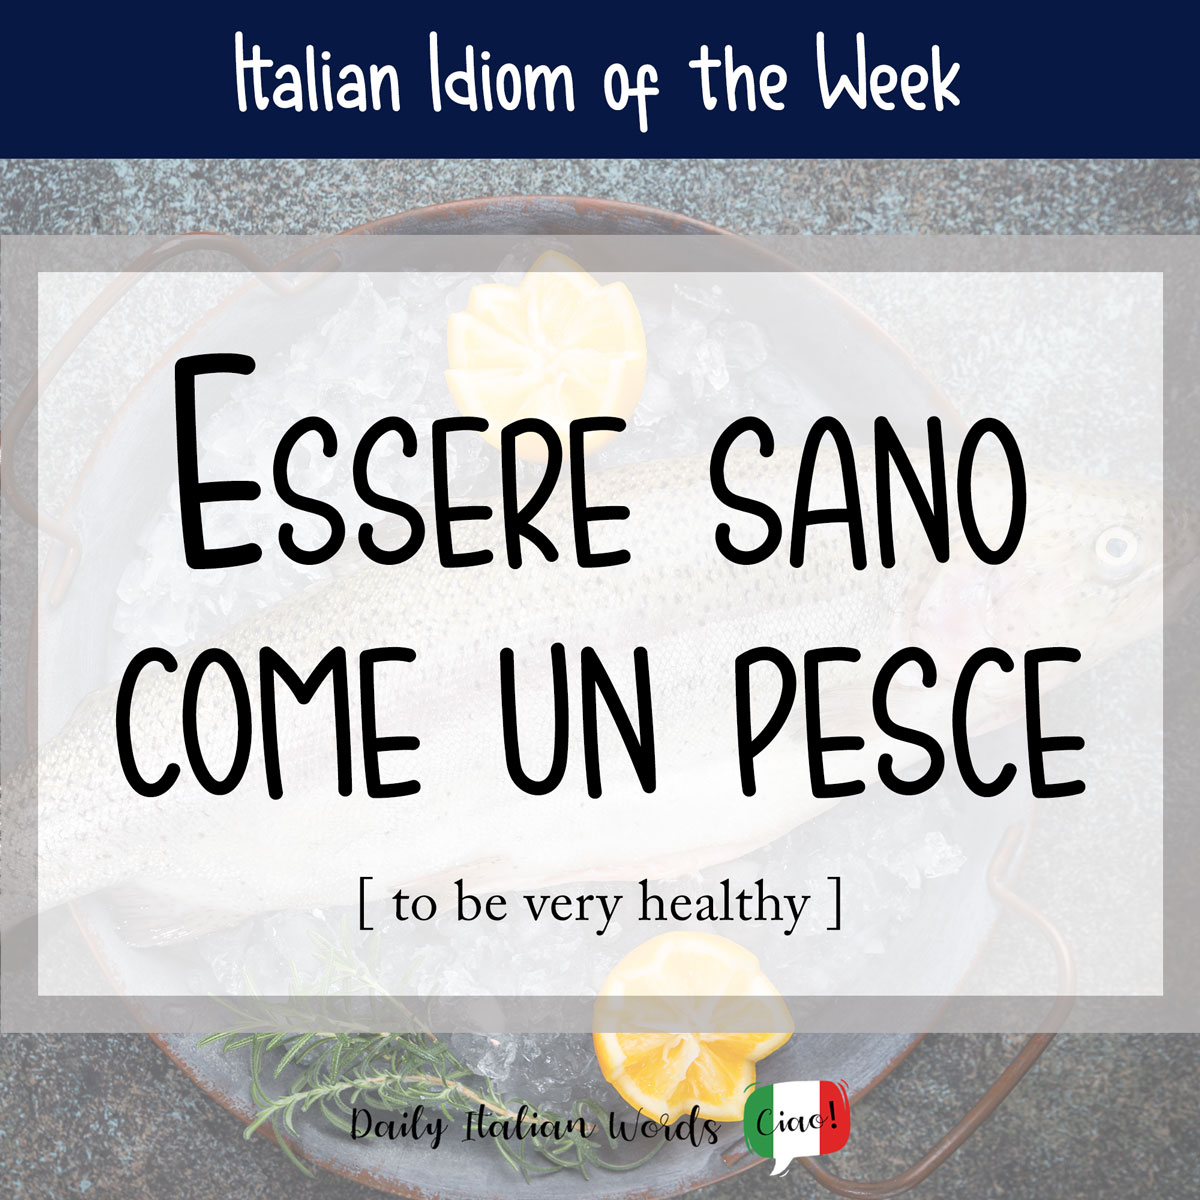 Italian idiom "Essere sano come un pesce"